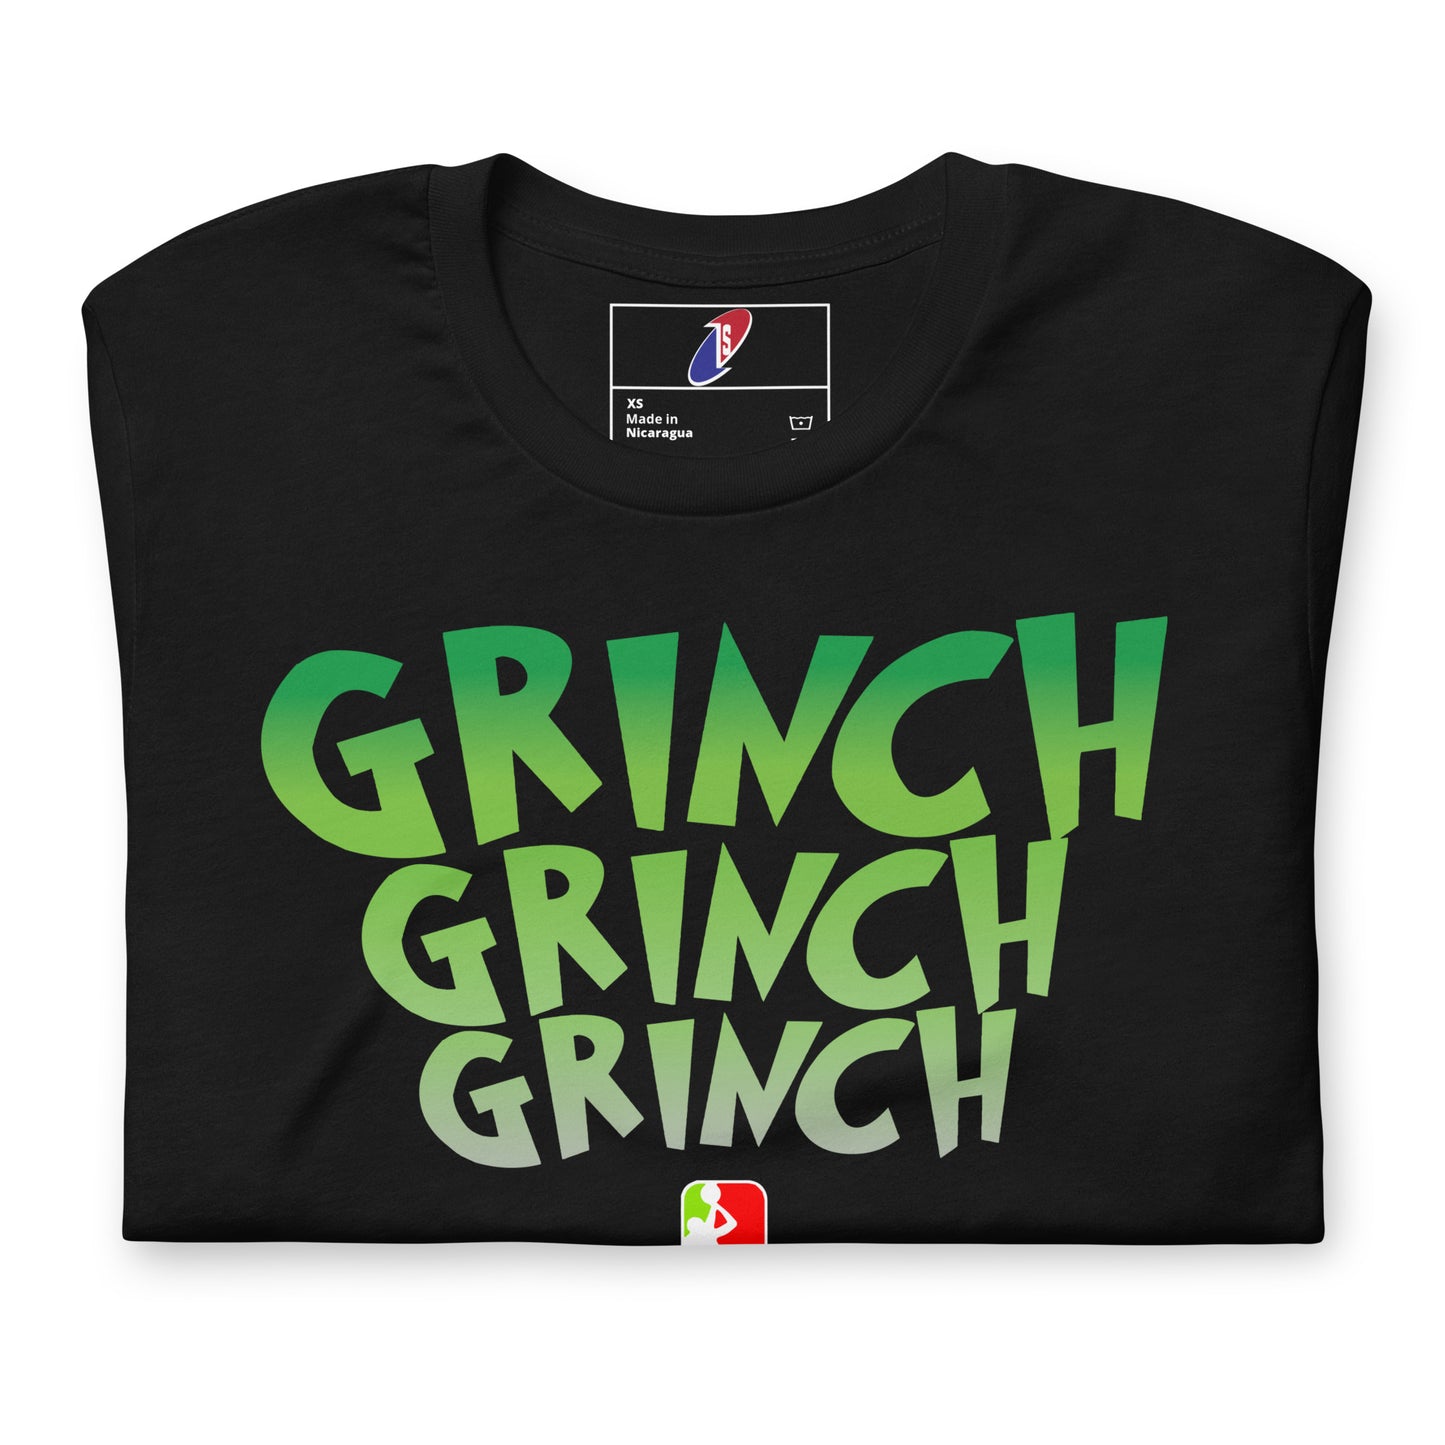 Echo Grinch shirt